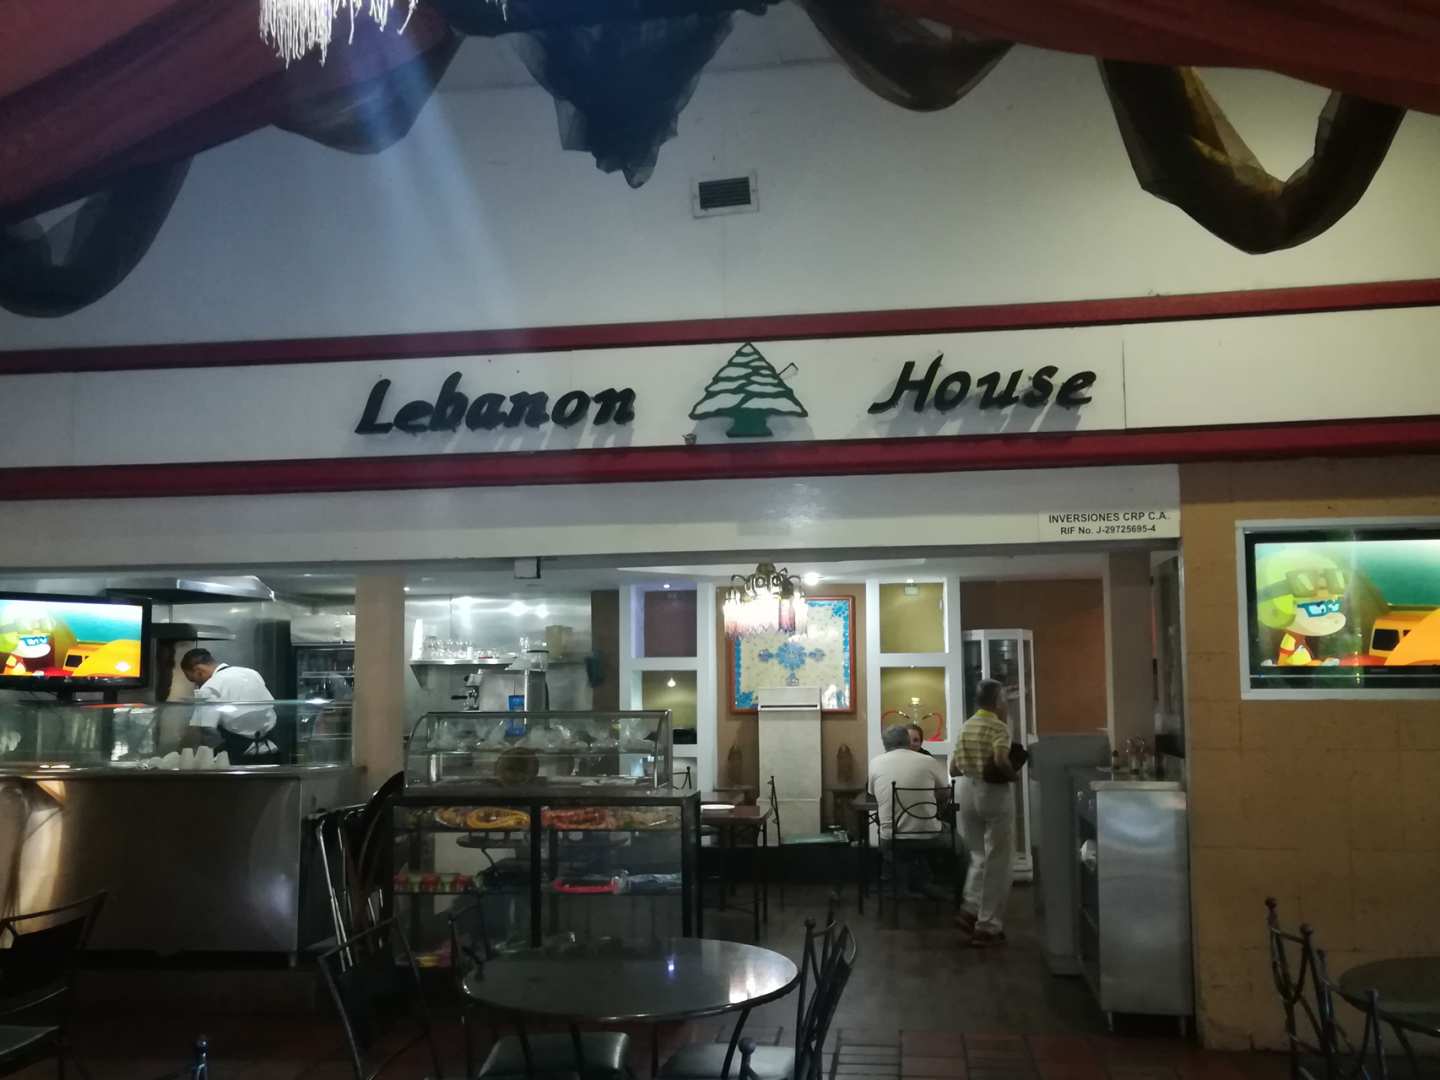 Lebanon House